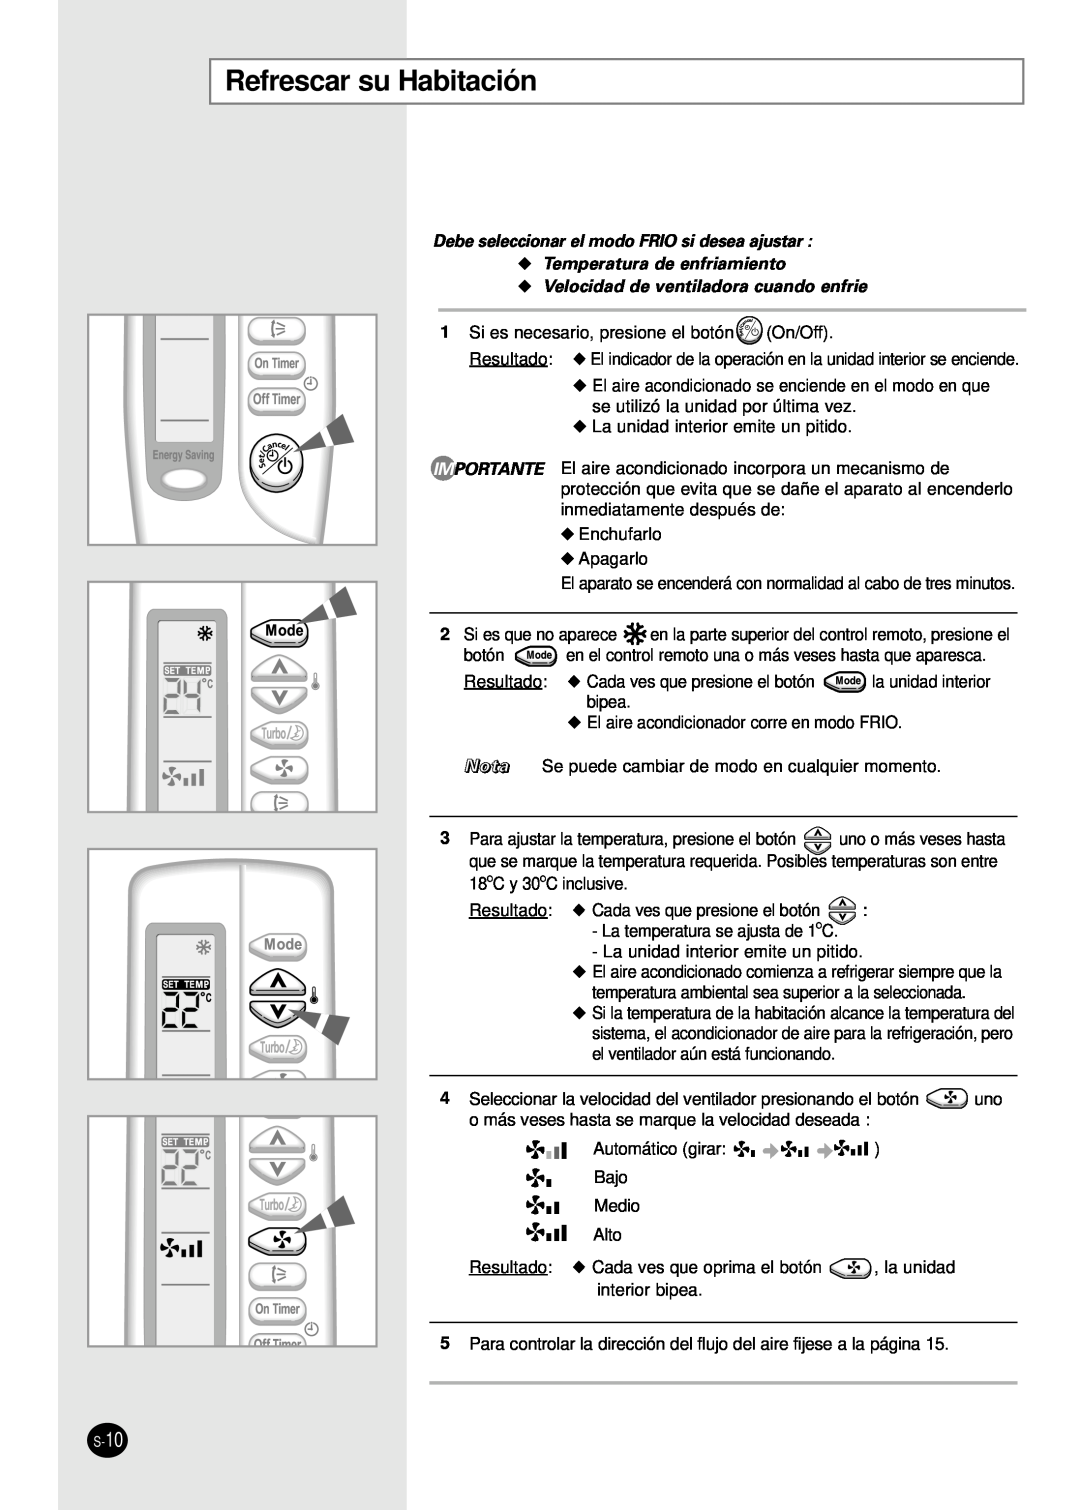 Samsung AS18S0GB Refrescar su Habitación, Debe seleccionar el modo FRIO si desea ajustar, Temperatura de enfriamiento 